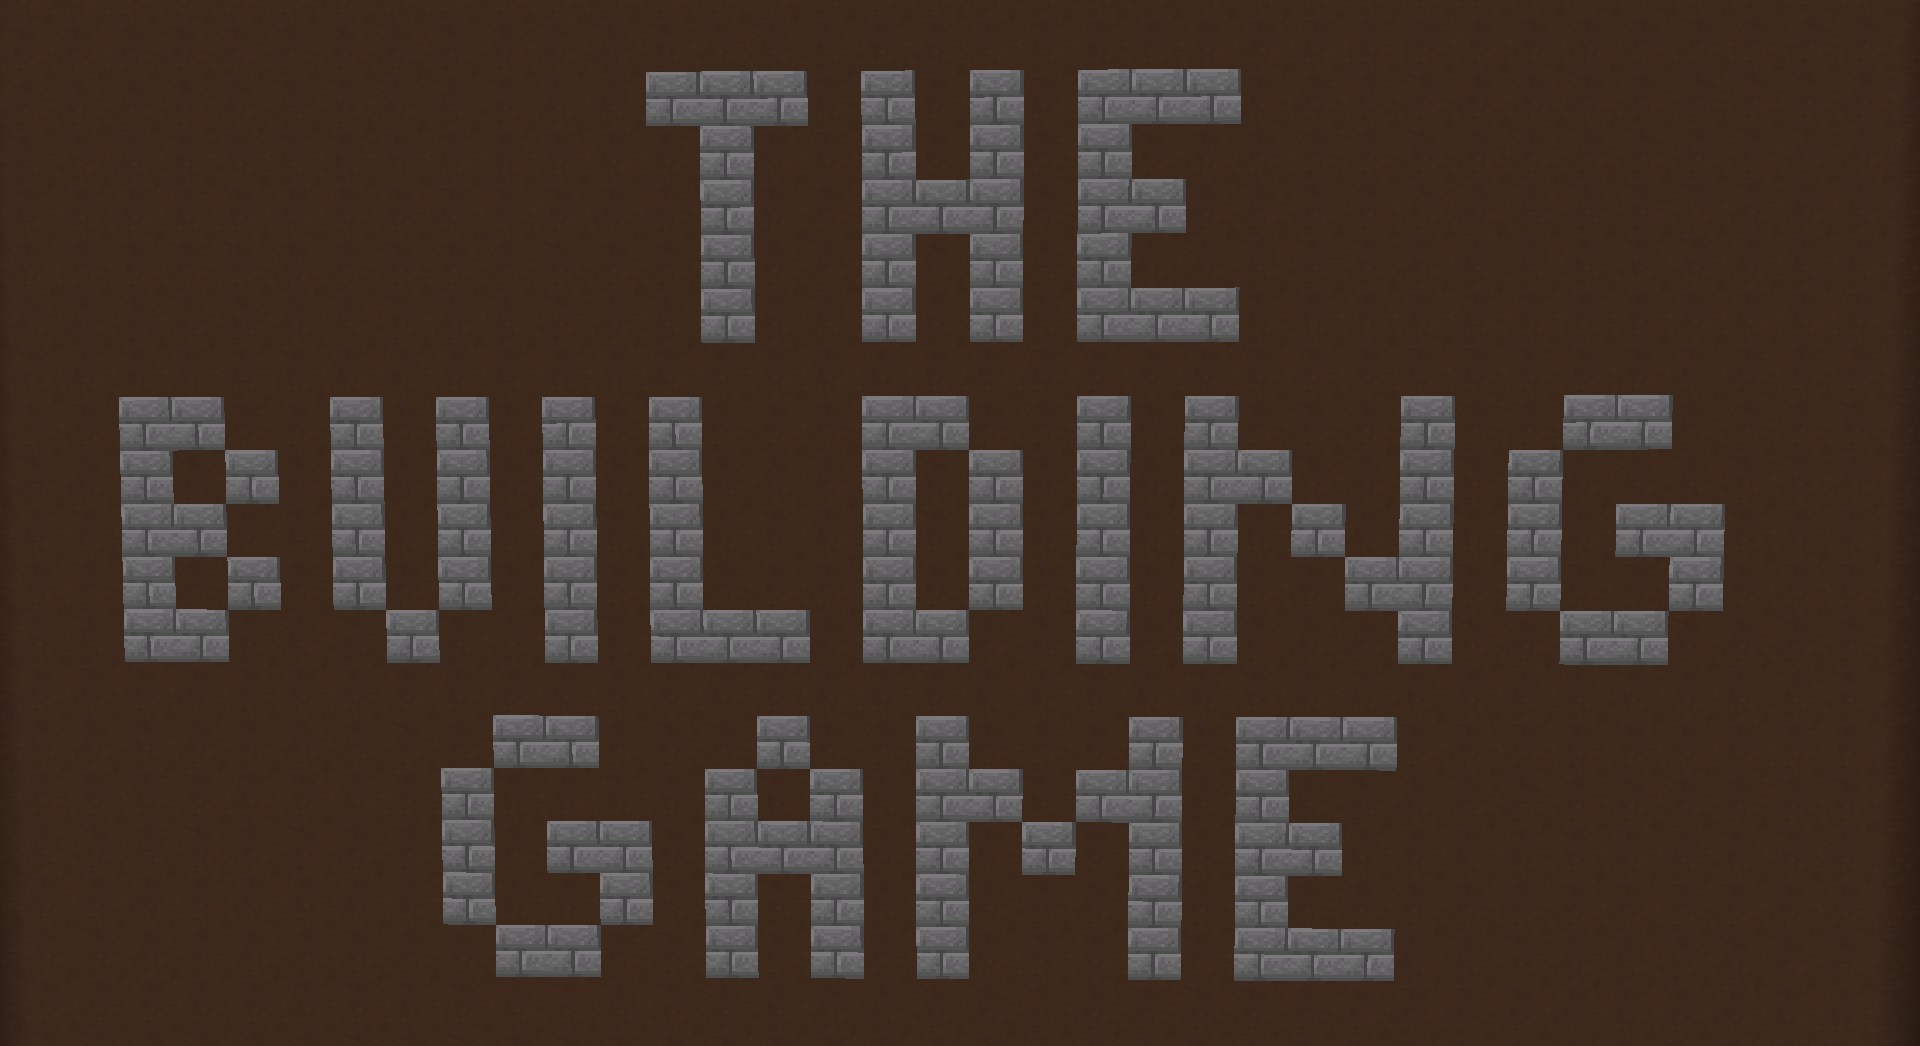 Descargar The Building Game for 1.16 para Minecraft 1.16.4